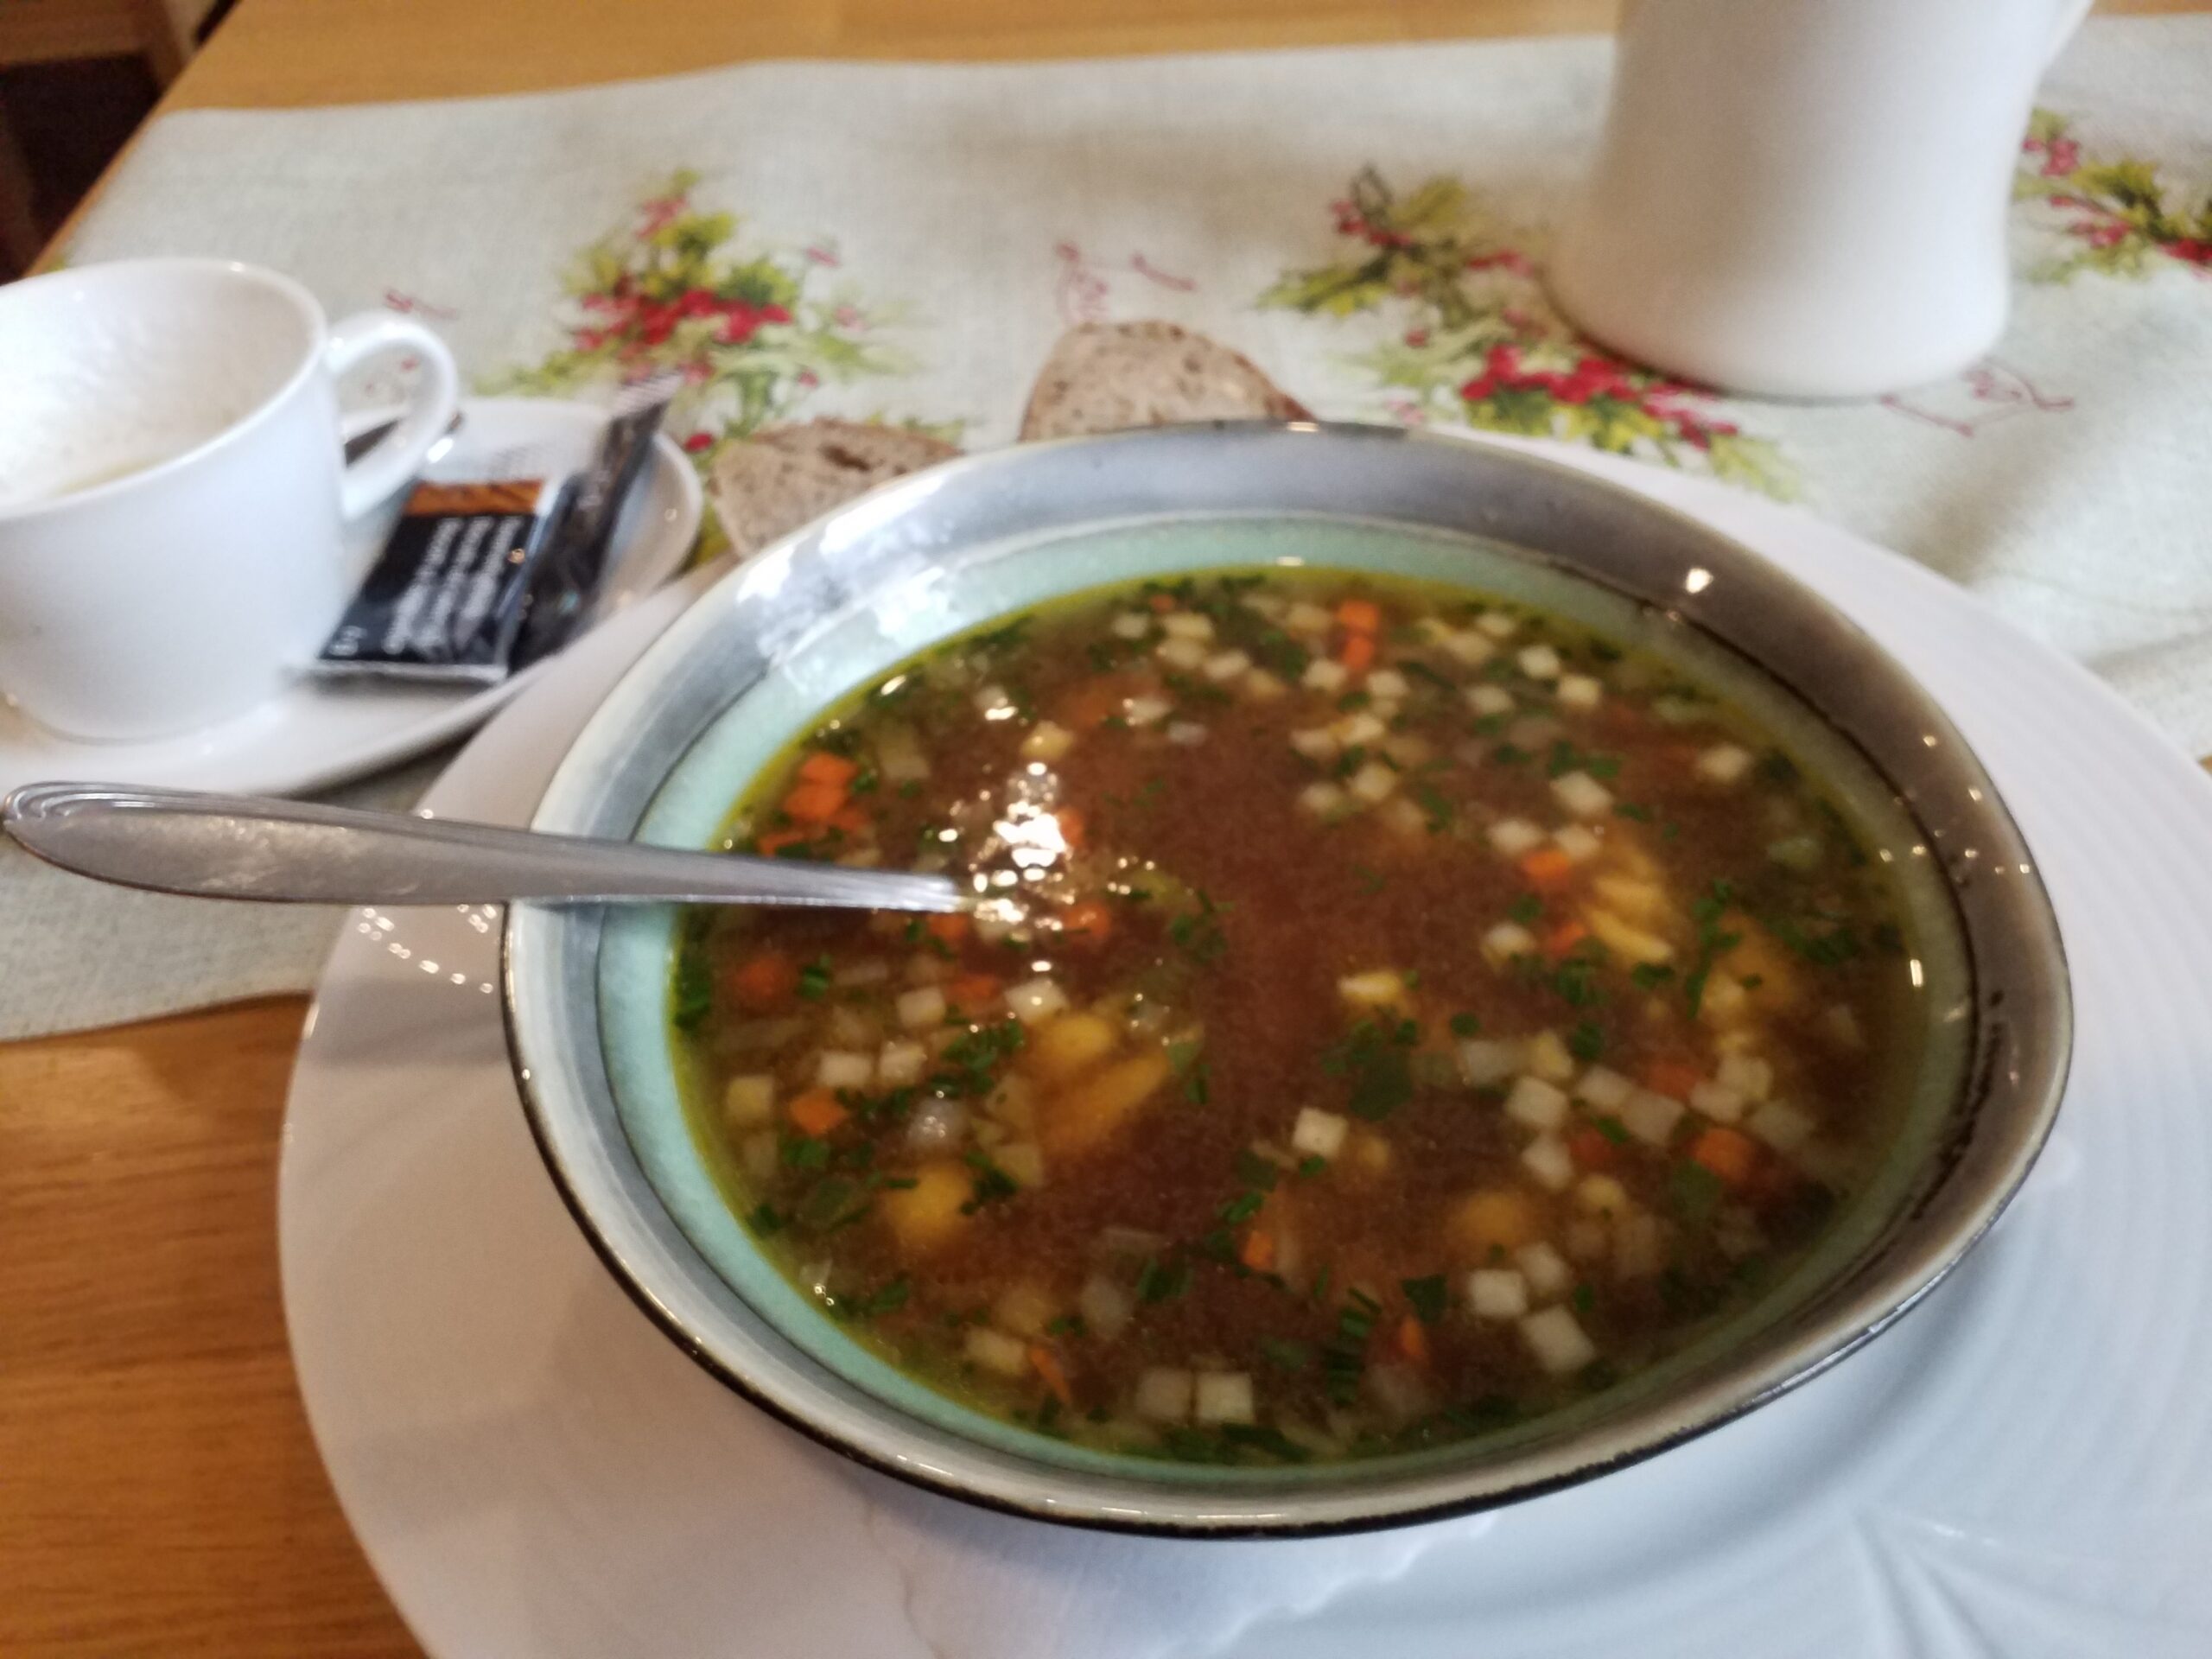 Teller warme klare Suppe mit Gemüsewürfelchen, Scheibe Brot daneben, Tischdecke, links Kaffeetasse.